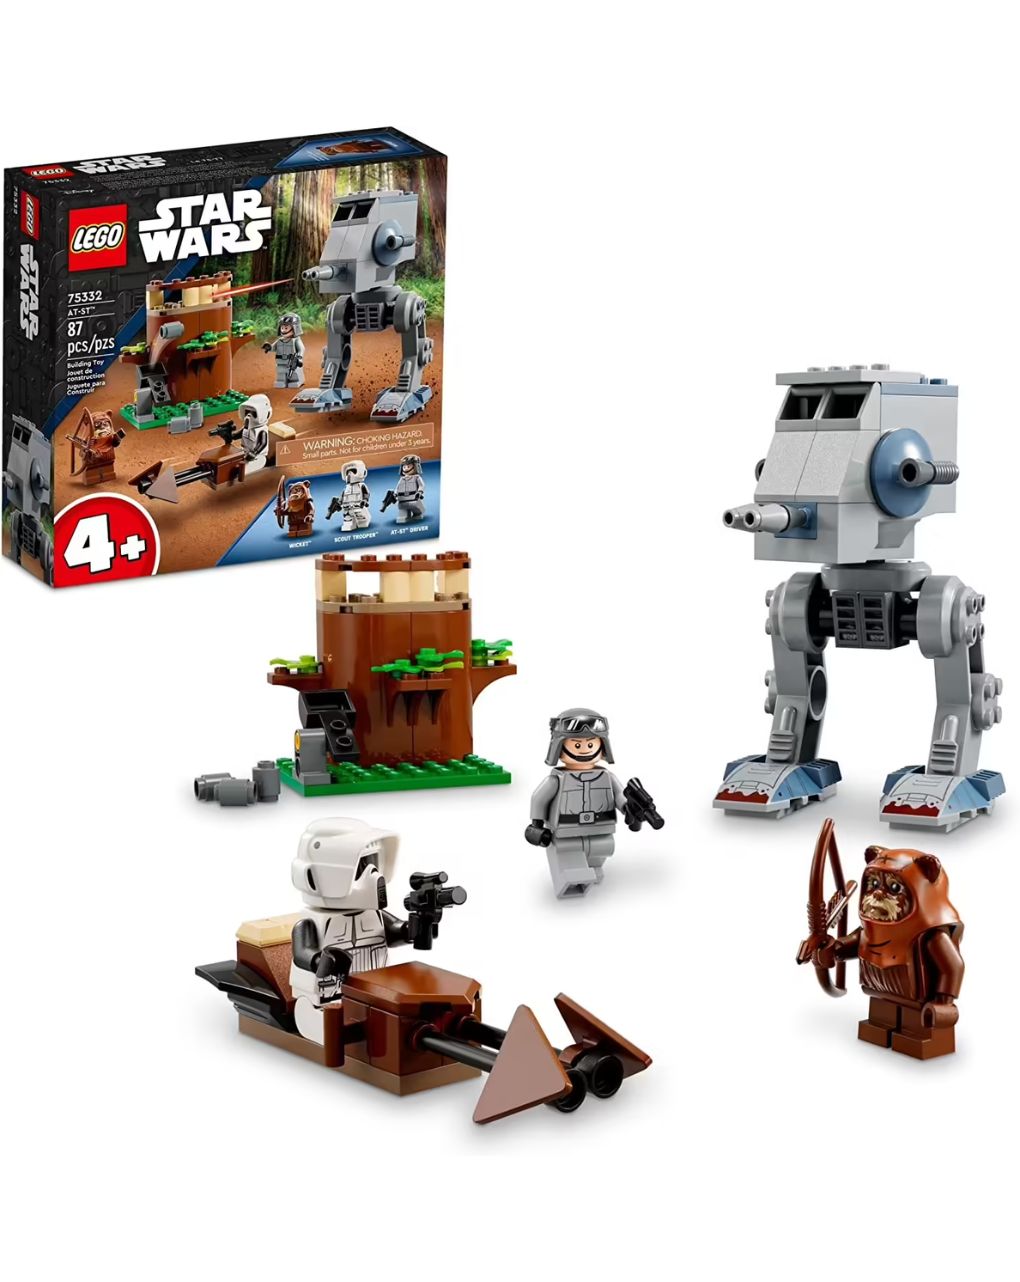 Lego star wars at-st 75332 - Lego, Lego Star Wars